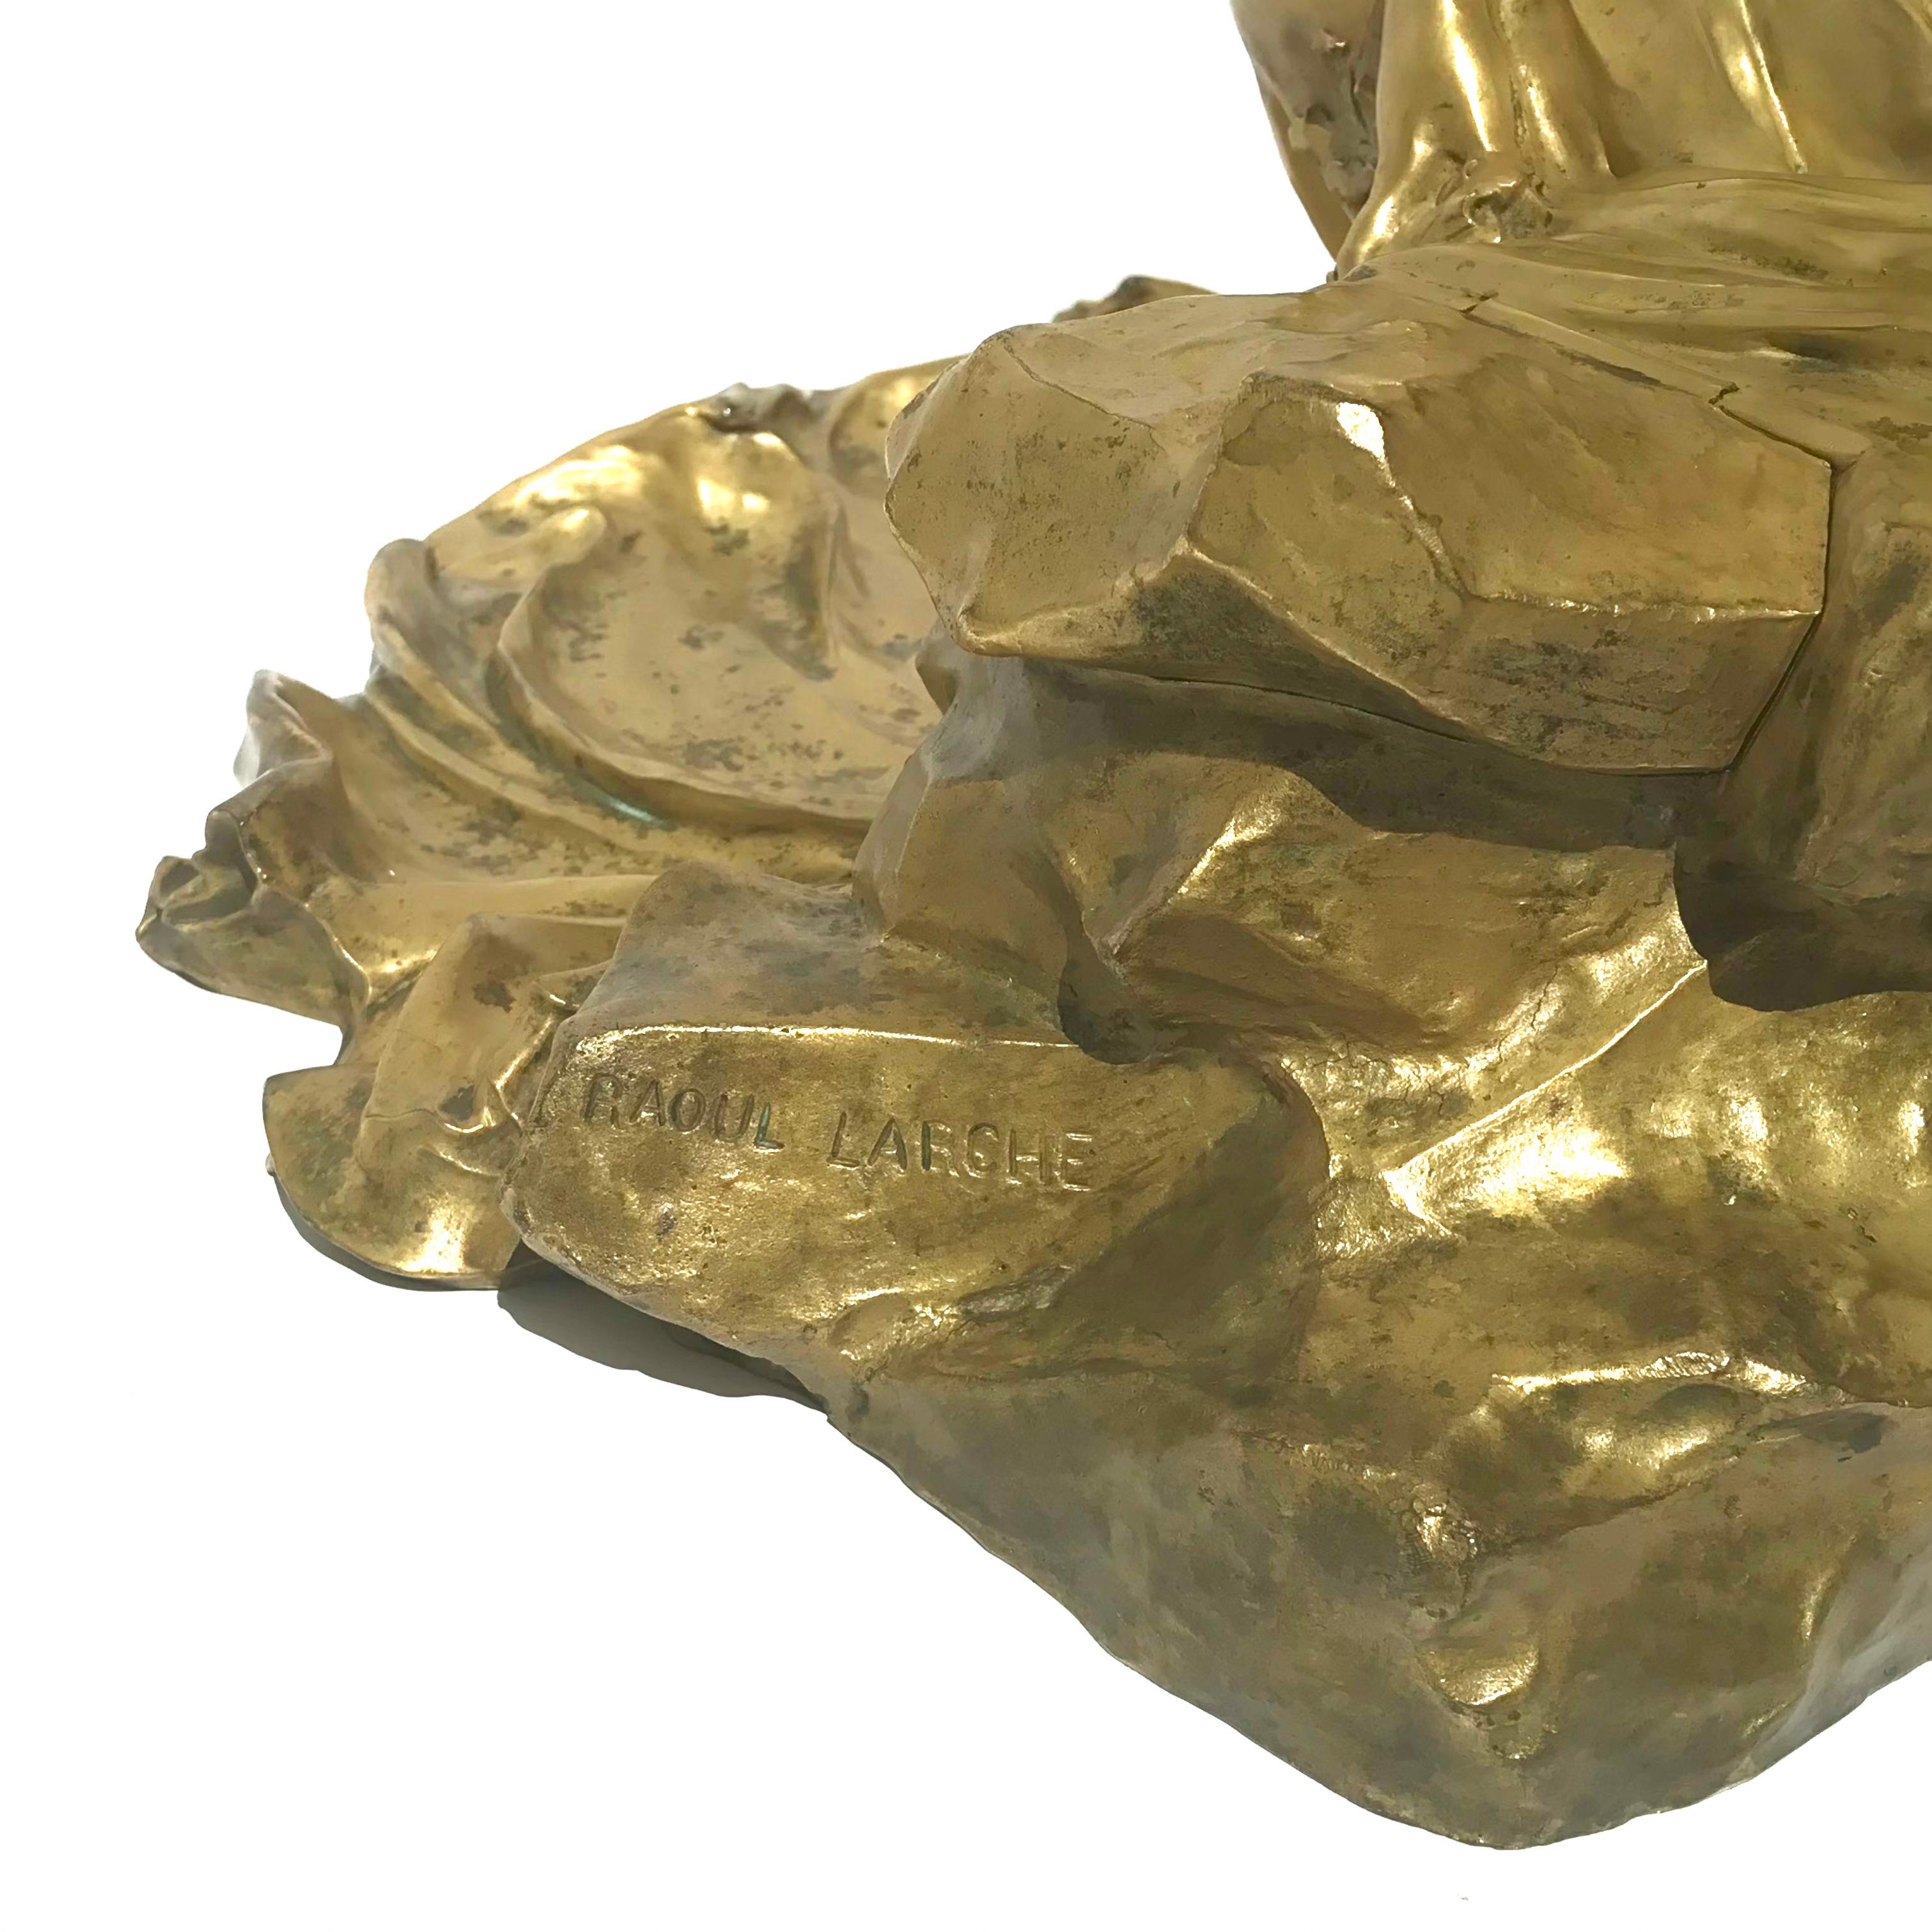 23” Raoul Larche  'L'Idée, Allégorie sur un Rocher' Gilt Bronze Inkwell For Sale 1